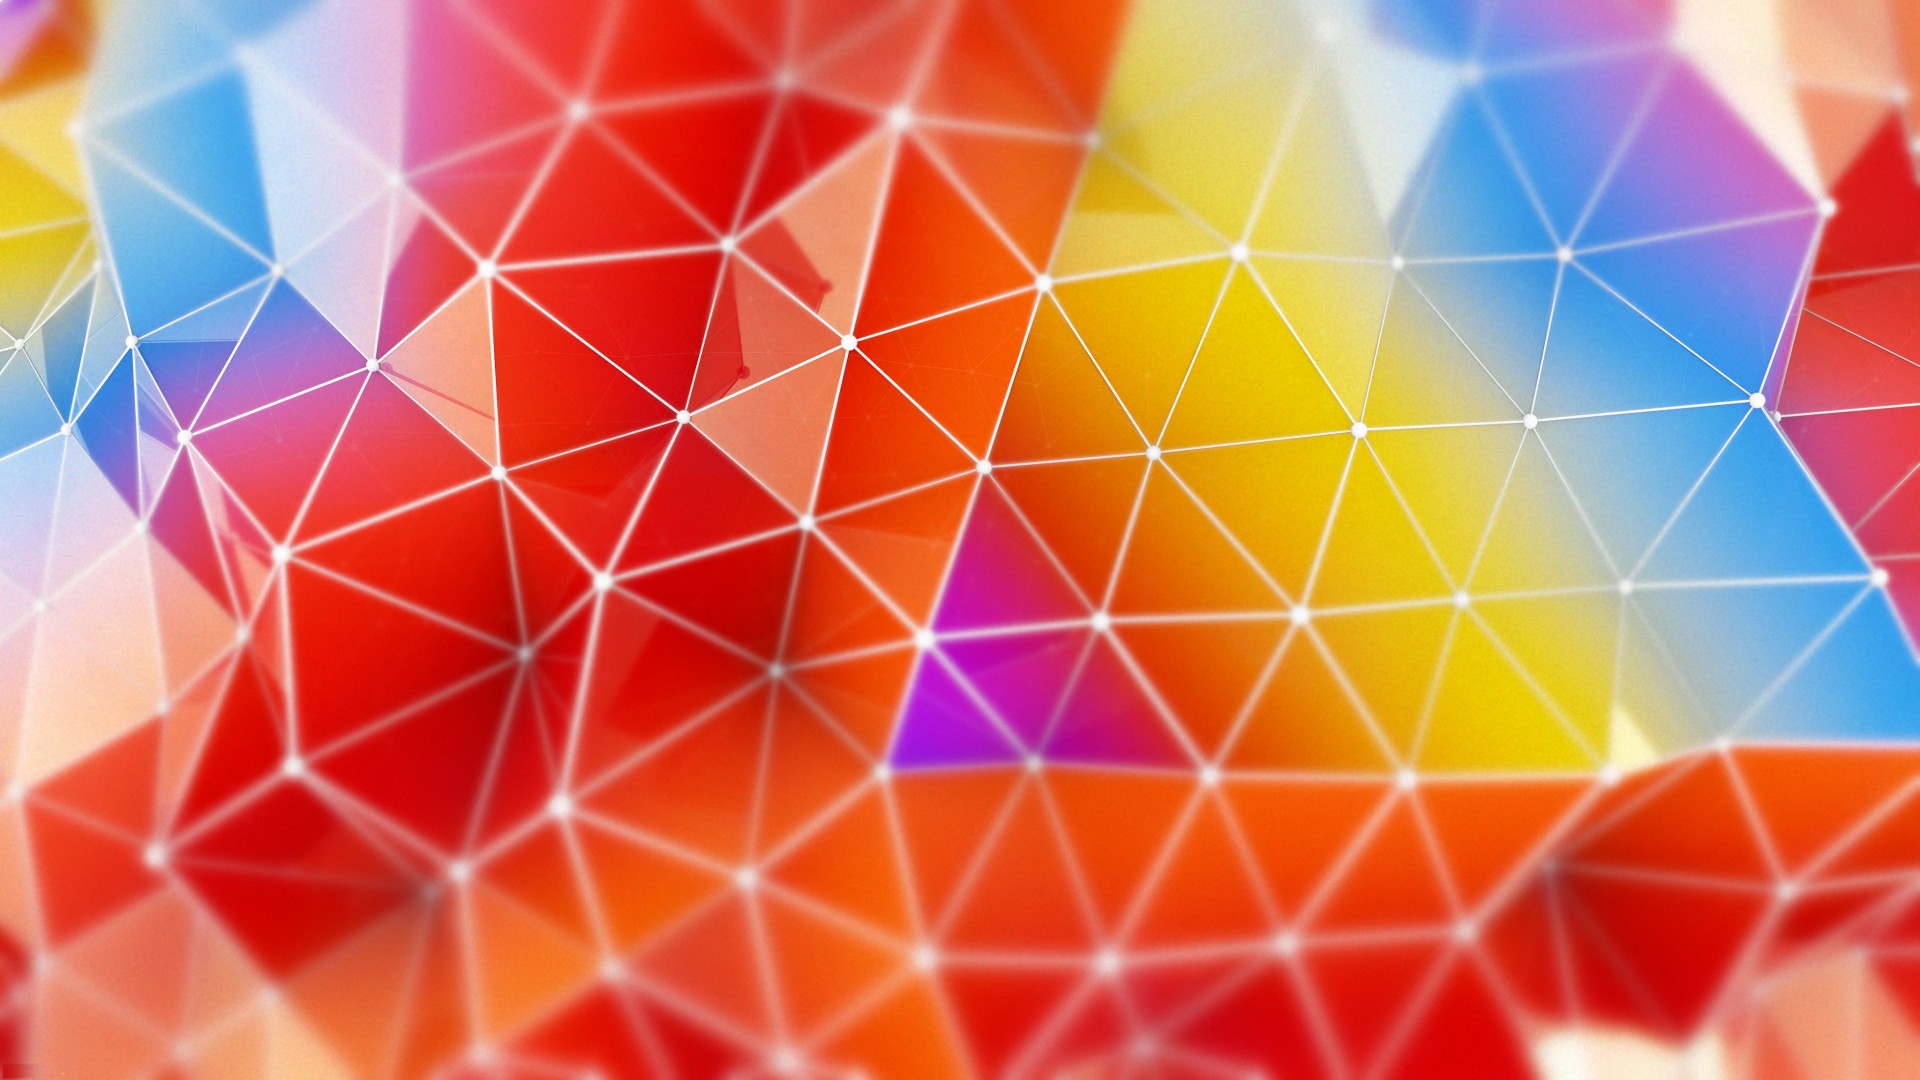 полигон, 4k, 5k, треугольники, оранжевый, голубой, красный, фон, обои, polygon, 4k, 5k wallpaper, orange, red, blue, background (horizontal)